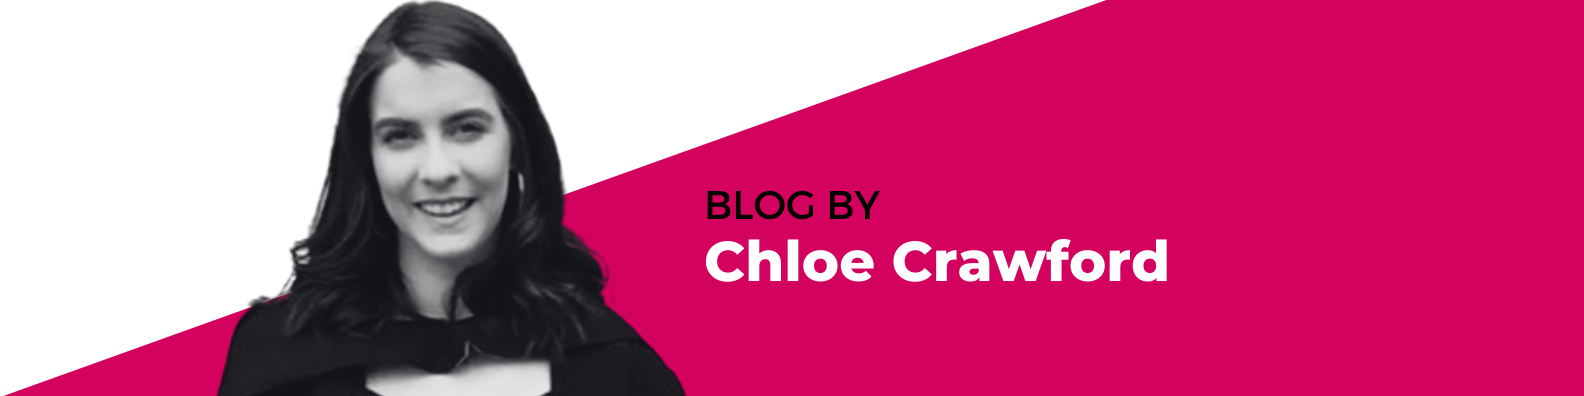 Chloe Crawford Blog